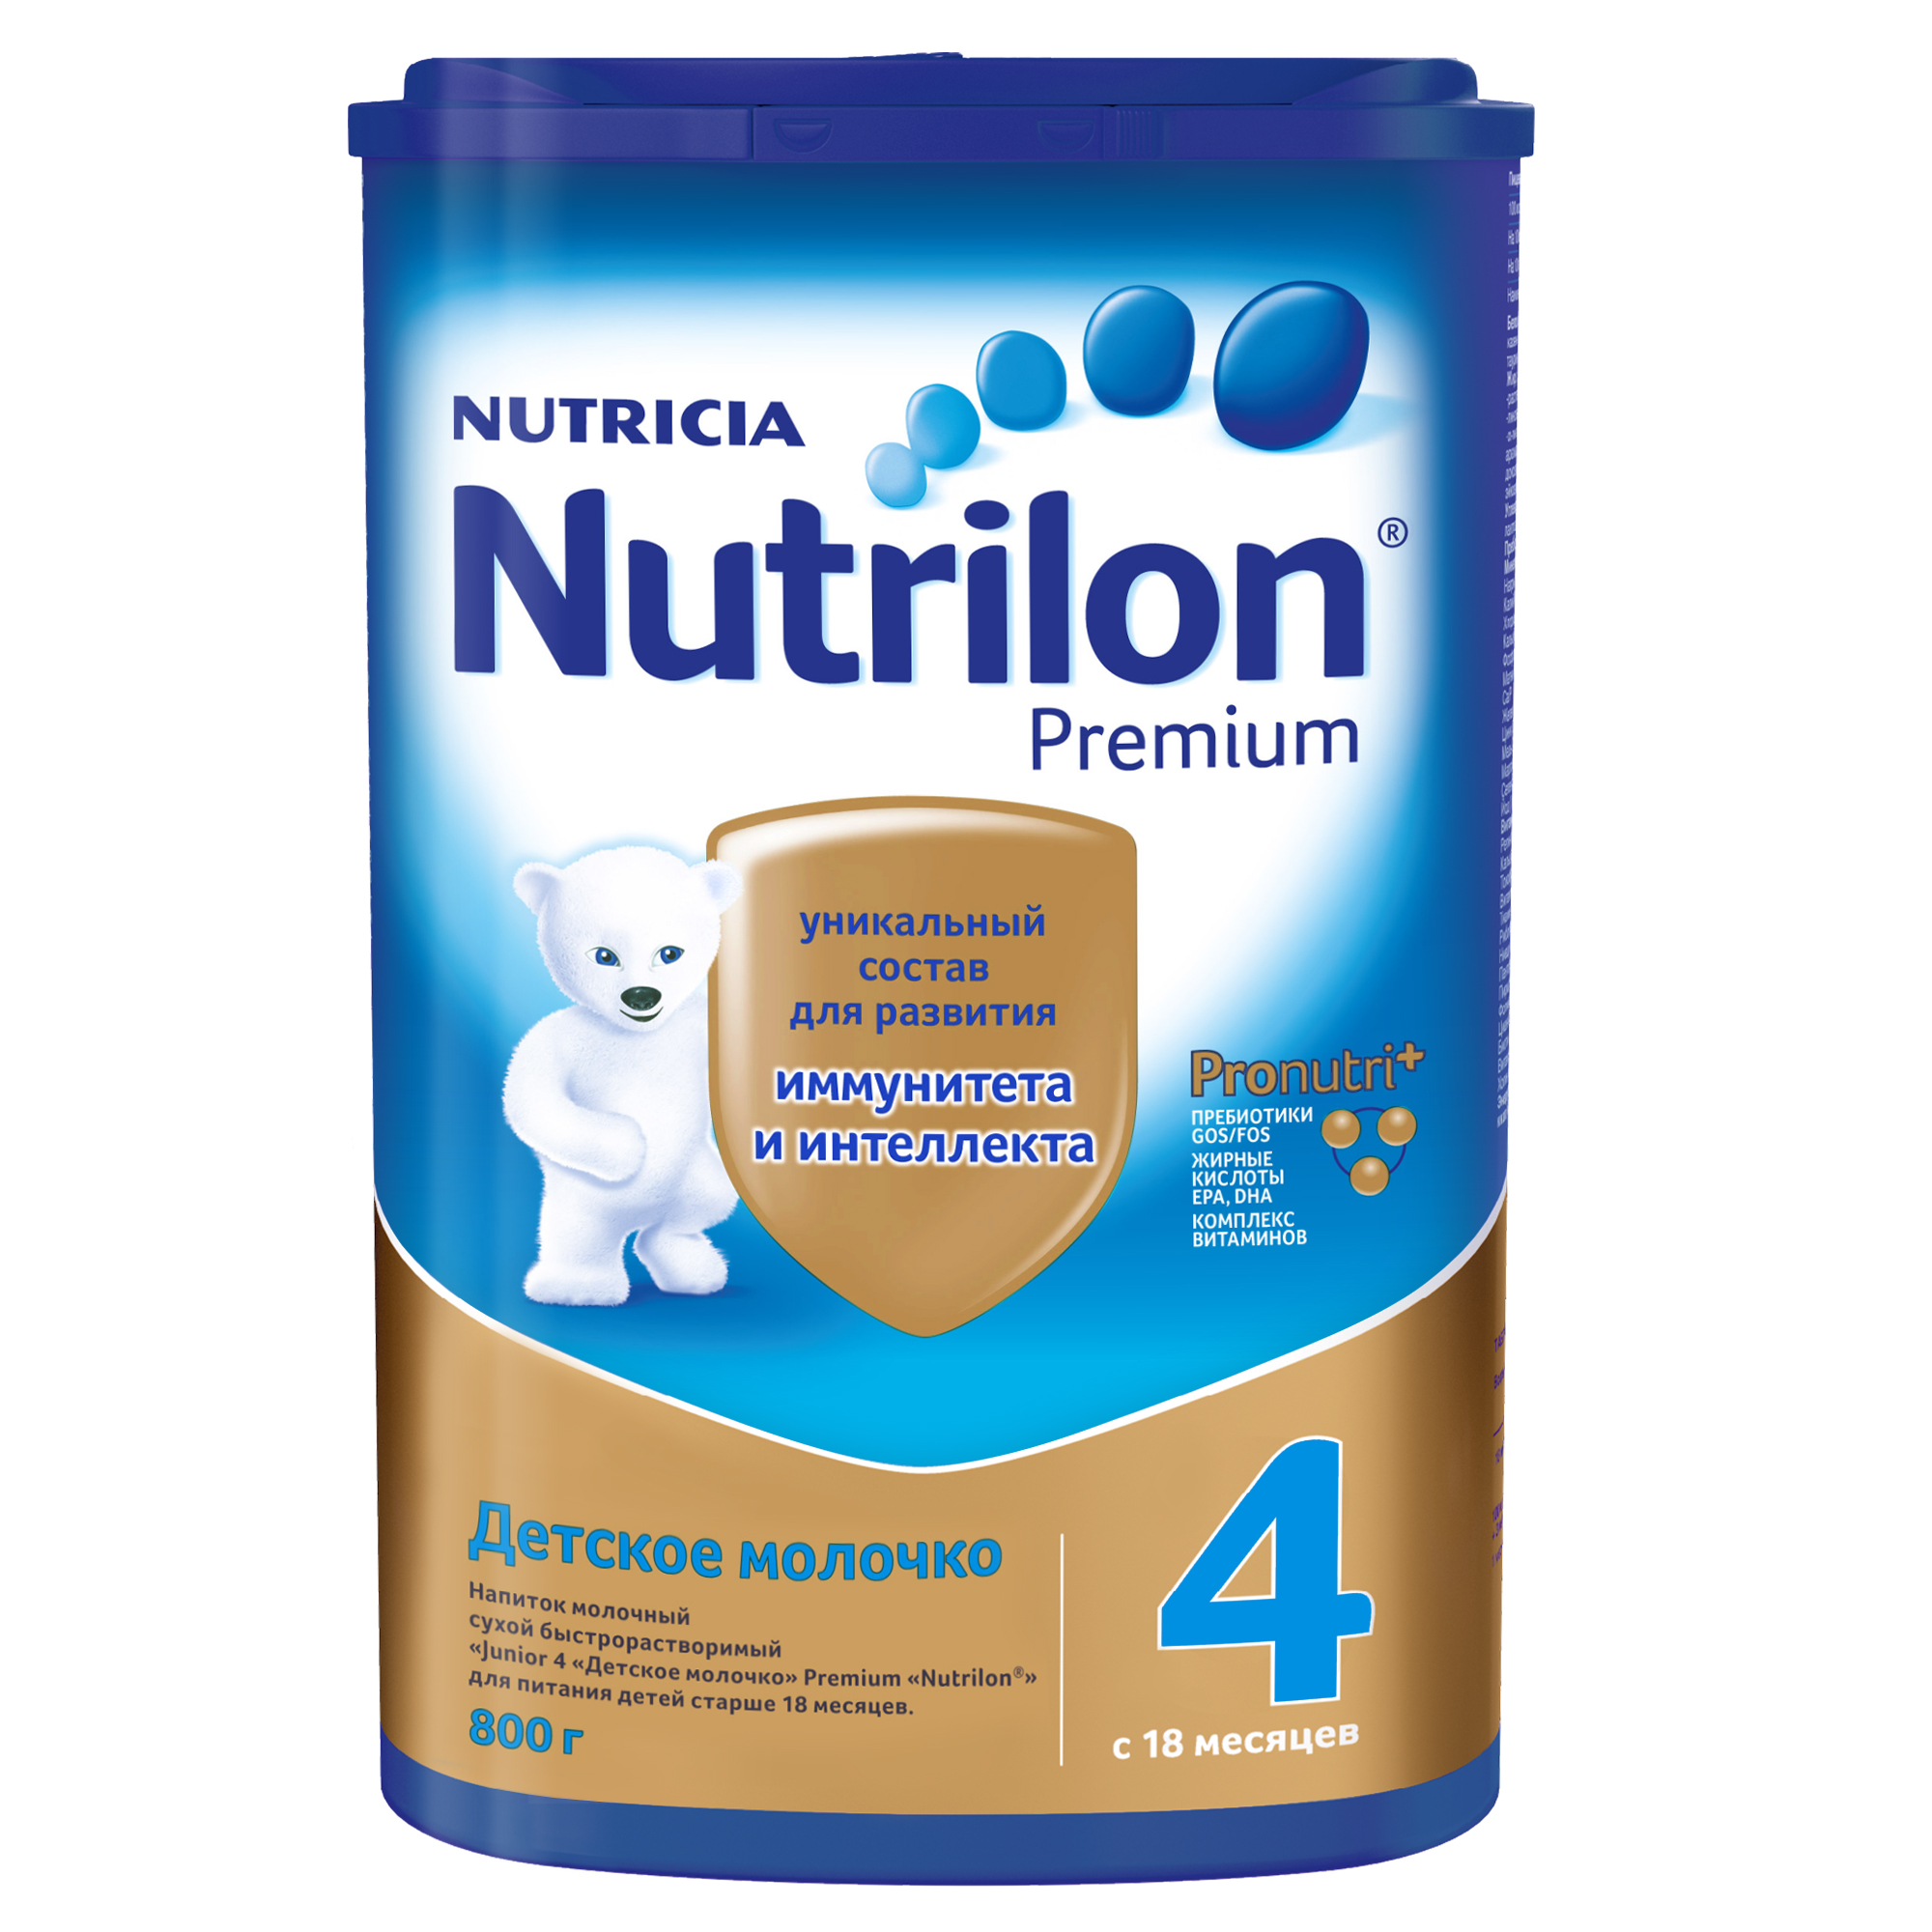 Детские молочные смеси нутрилон (nutrilon)